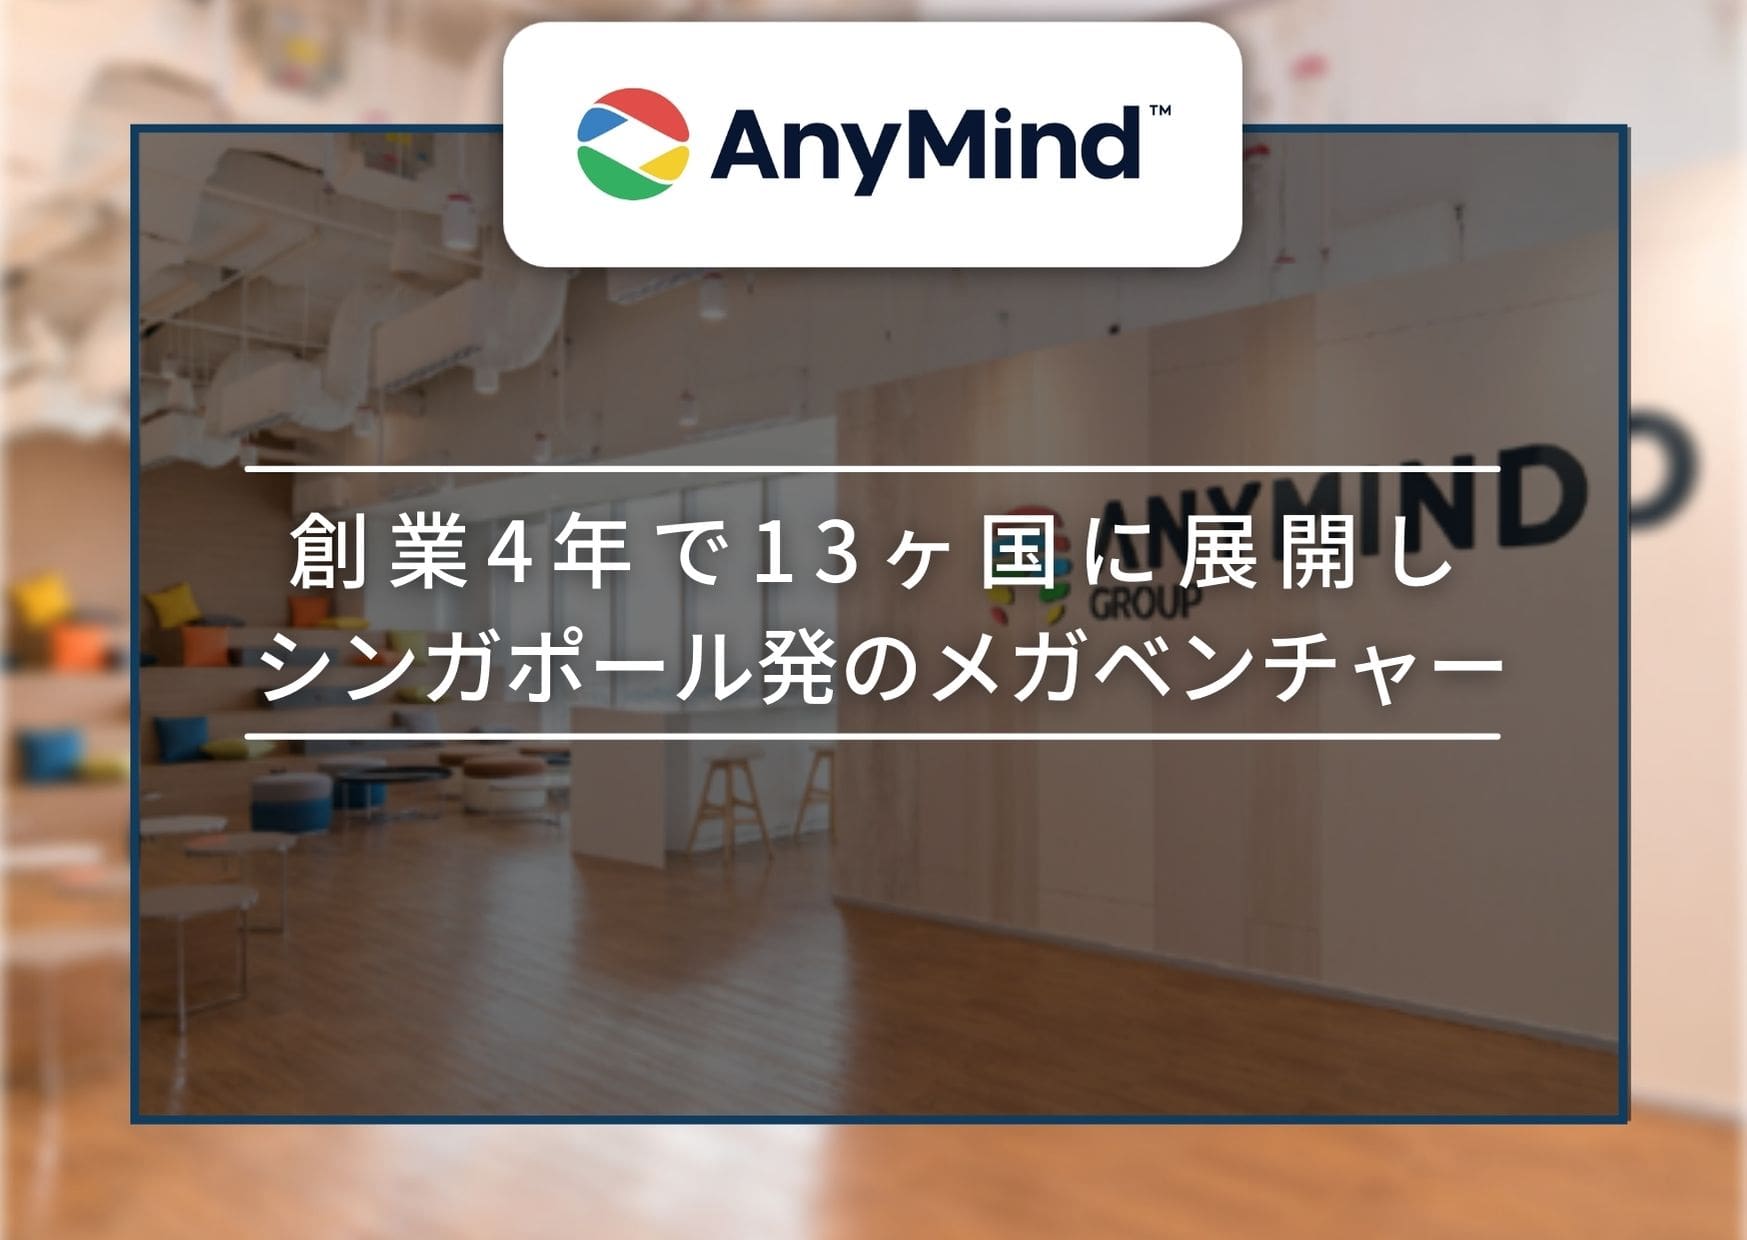 Anymind Group株式会社 創業4年で13カ国展開 Webマーケティングで世界を席巻する最先端グローバルメガベンチャー